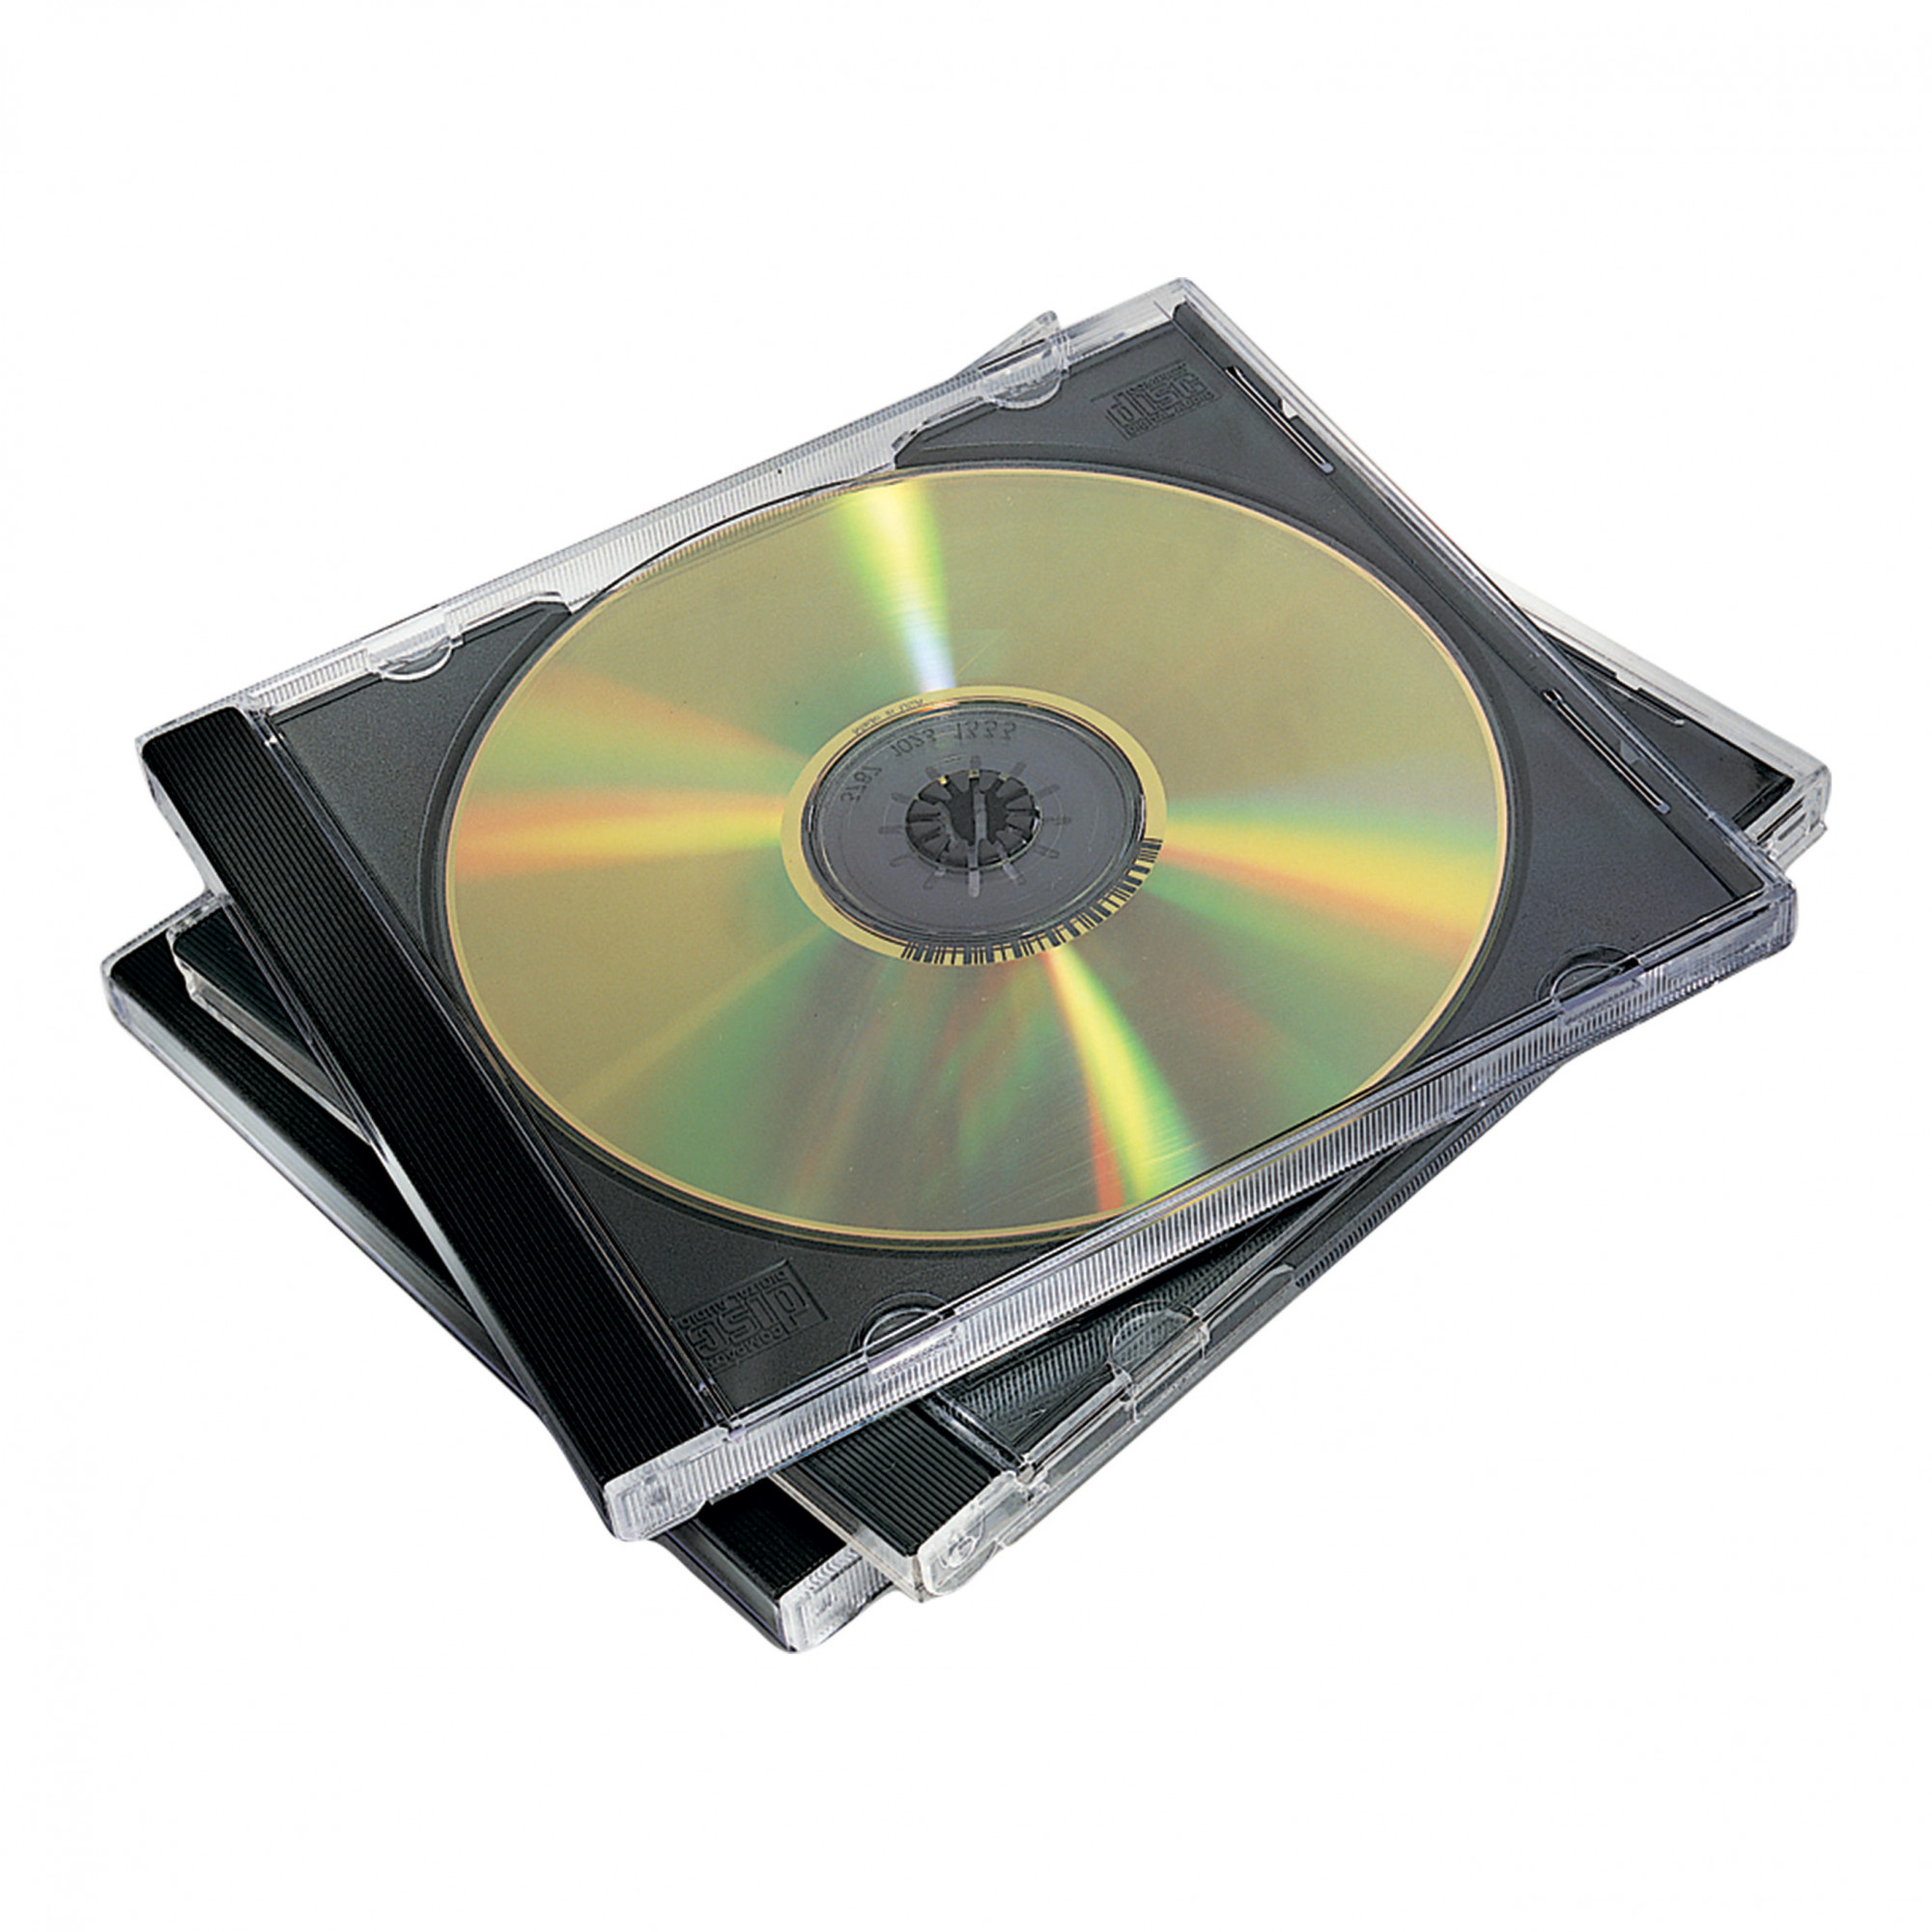 Жесткий диск flash память компакт диск процессор. CD - Compact Disk (компакт диск). CD (Compact Disc) — оптический носитель. DVD- DVD (4-16 Hbayt). CD-Case 3cd.